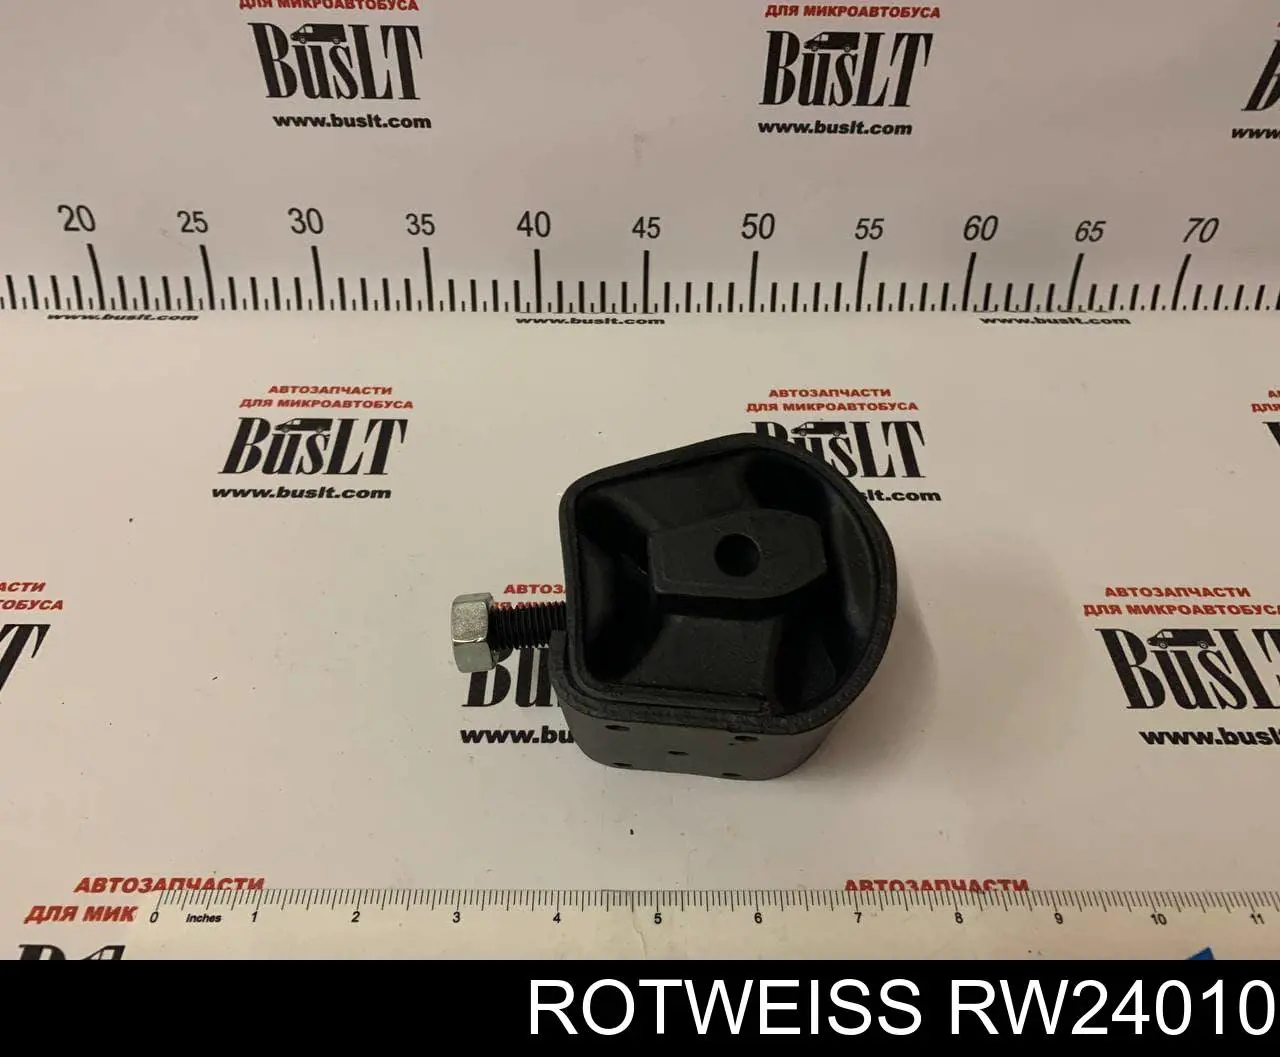 RW24010 Rotweiss montaje de transmision (montaje de caja de cambios)